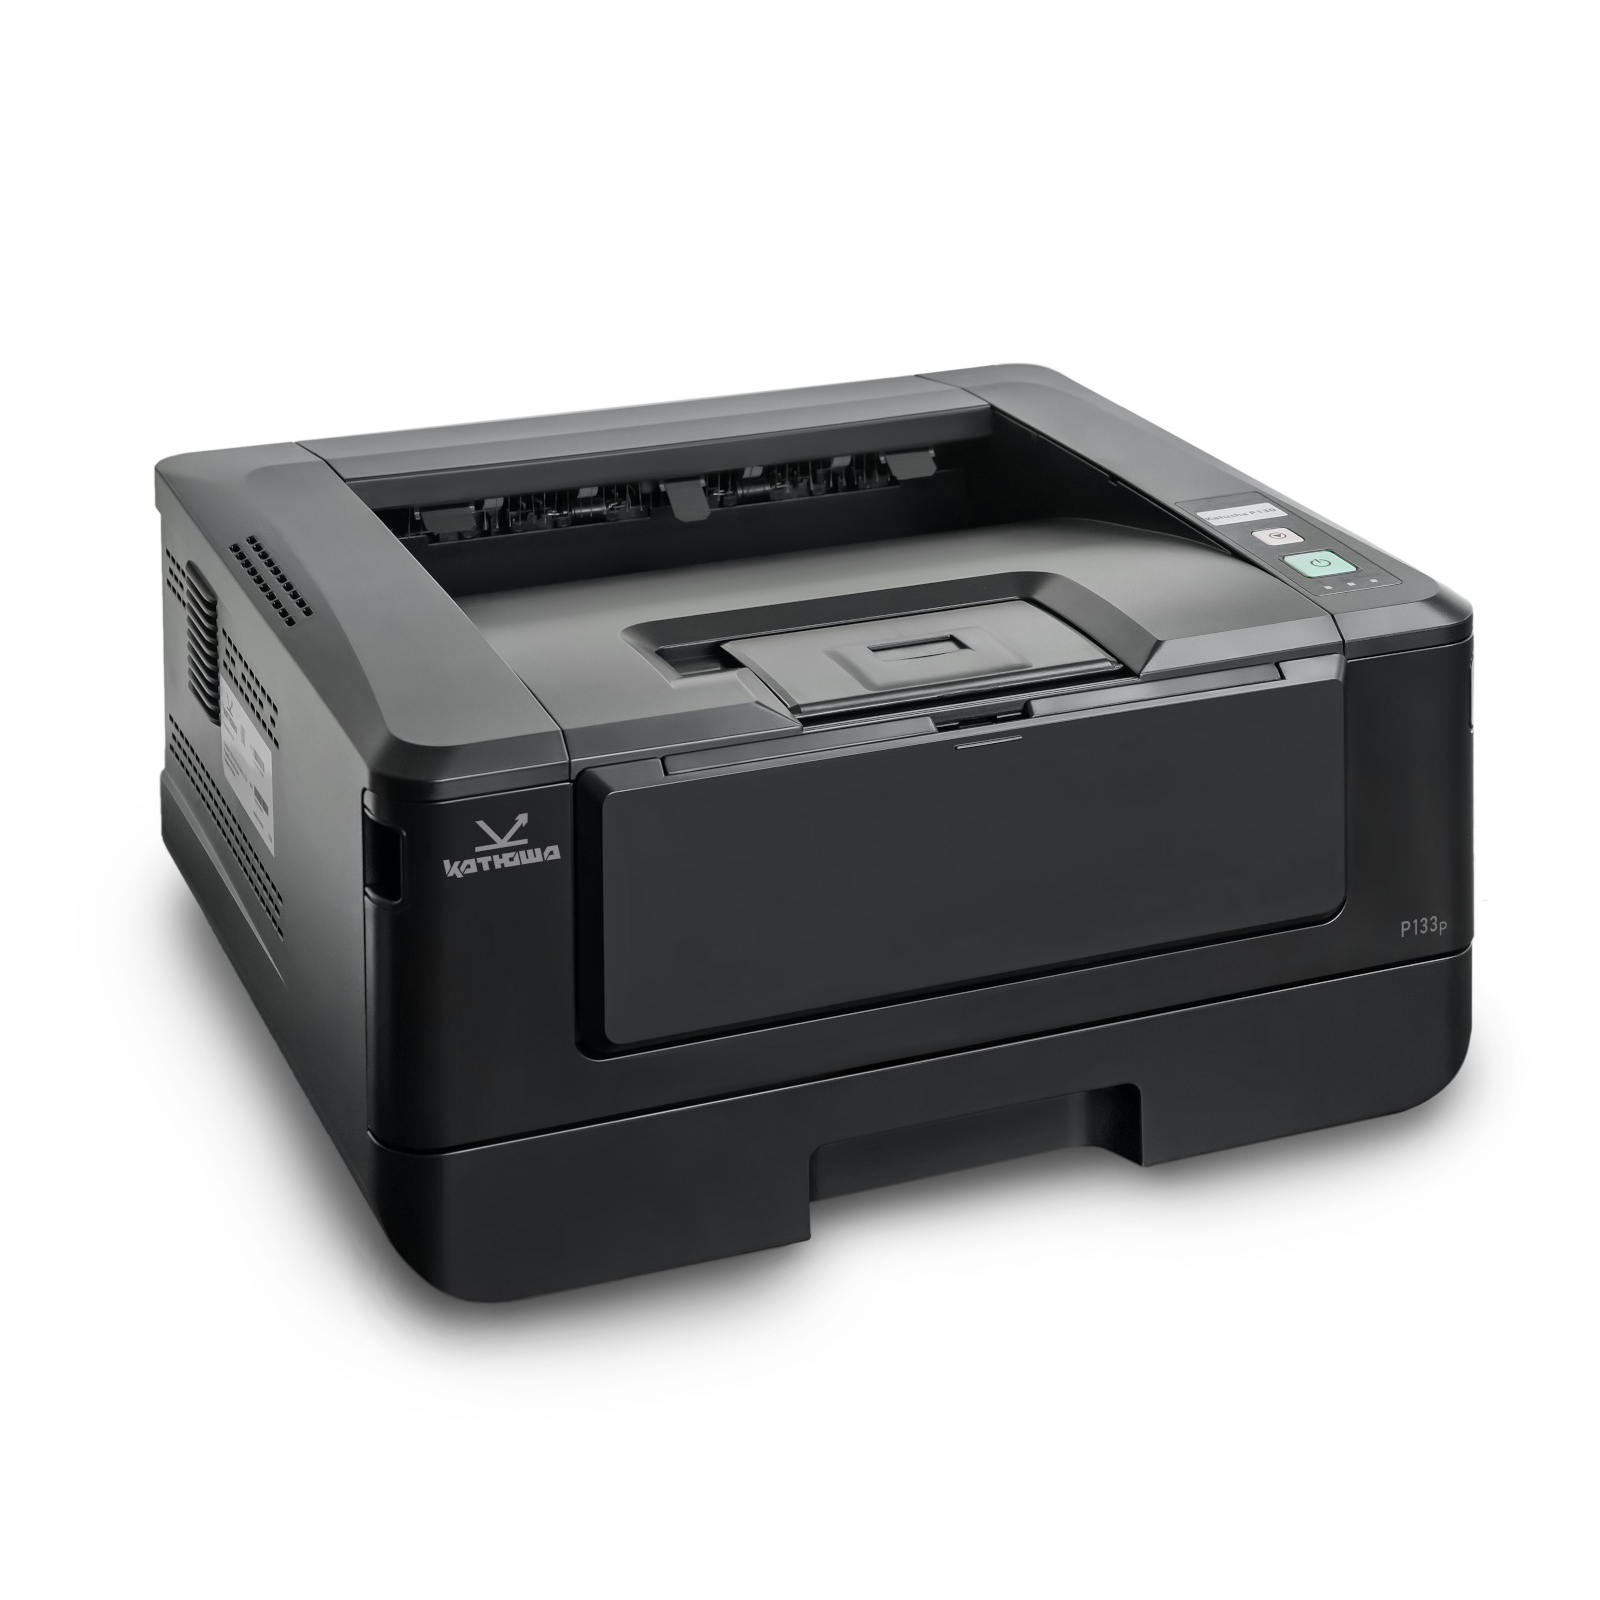 Принтер лазерный Катюша P133, черно-белая печать, 33 стр/мин, 1200 dpi, 1 ГБ RAM, USB, Ethernet